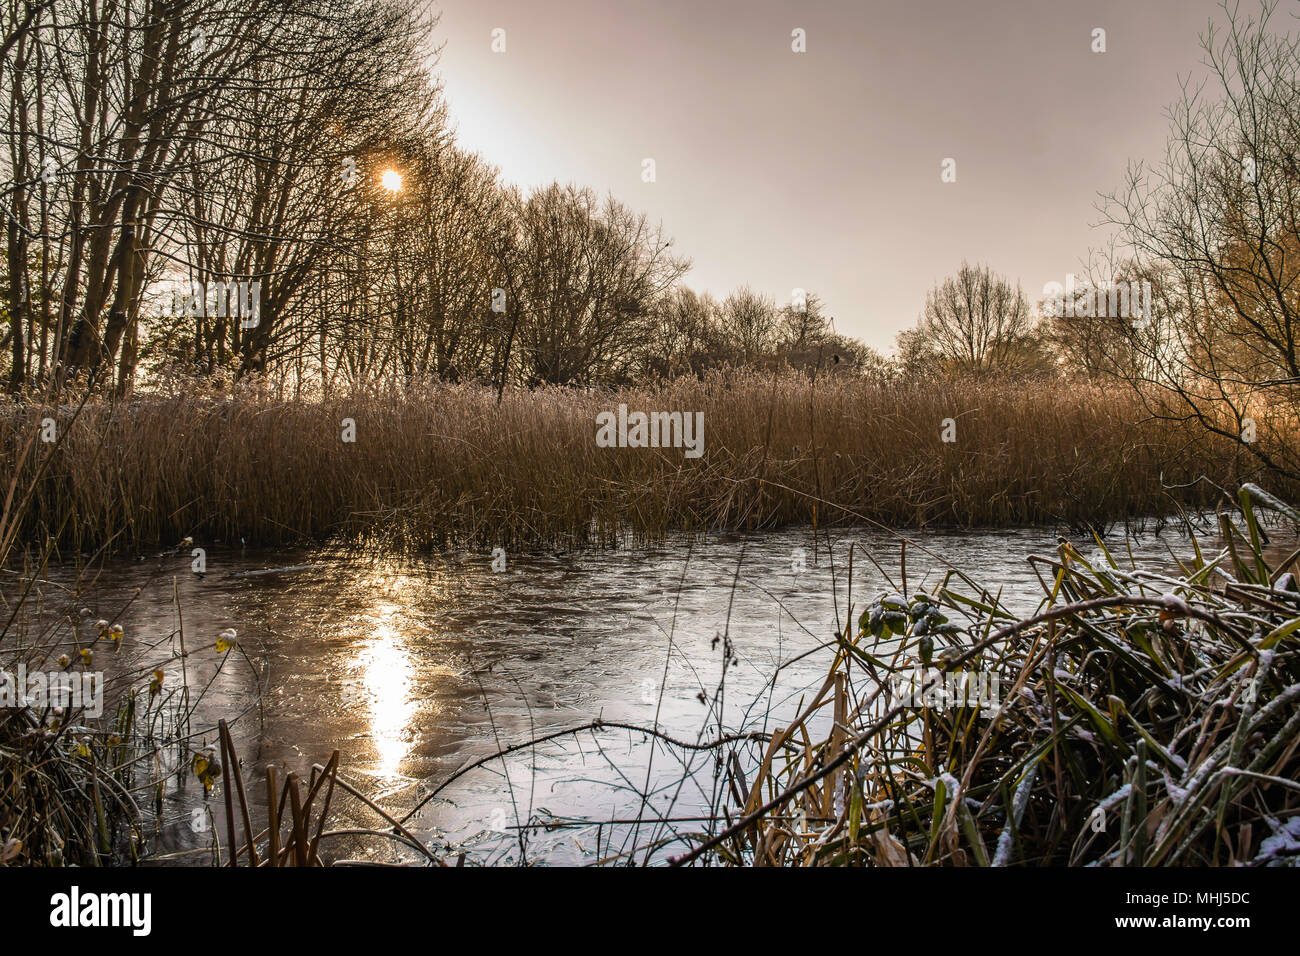 Westport See im Winter Tag.-on-Trent, Staffordshire, Großbritannien. Sun Reflexion in gefrorenen Teich. Staffordshire Landschaft uk. Ruhe, schöner Morgen schüren. Stockfoto